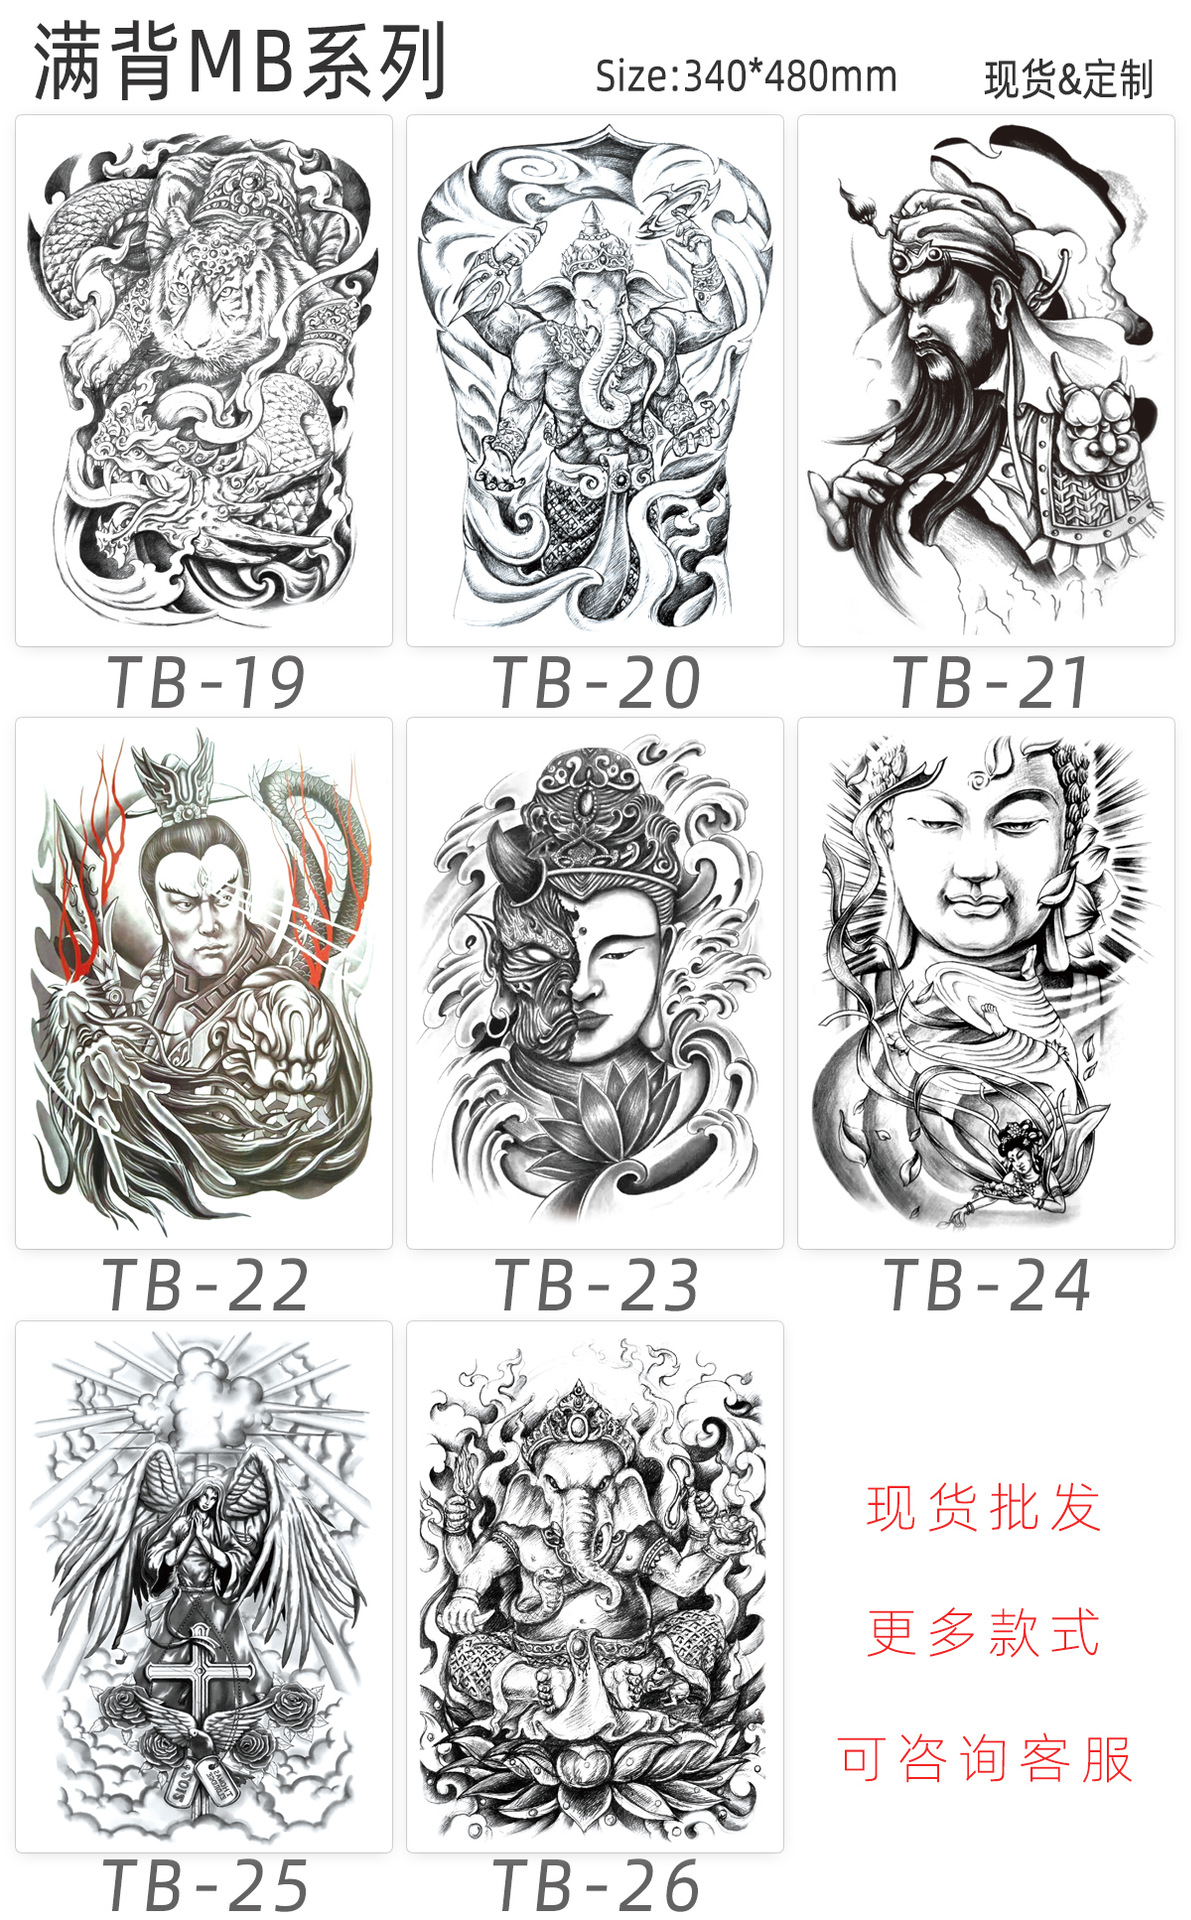 纹身作品_福州纹身店|福州战神纹身|1996年成立｜福州刺青|福州刺青店